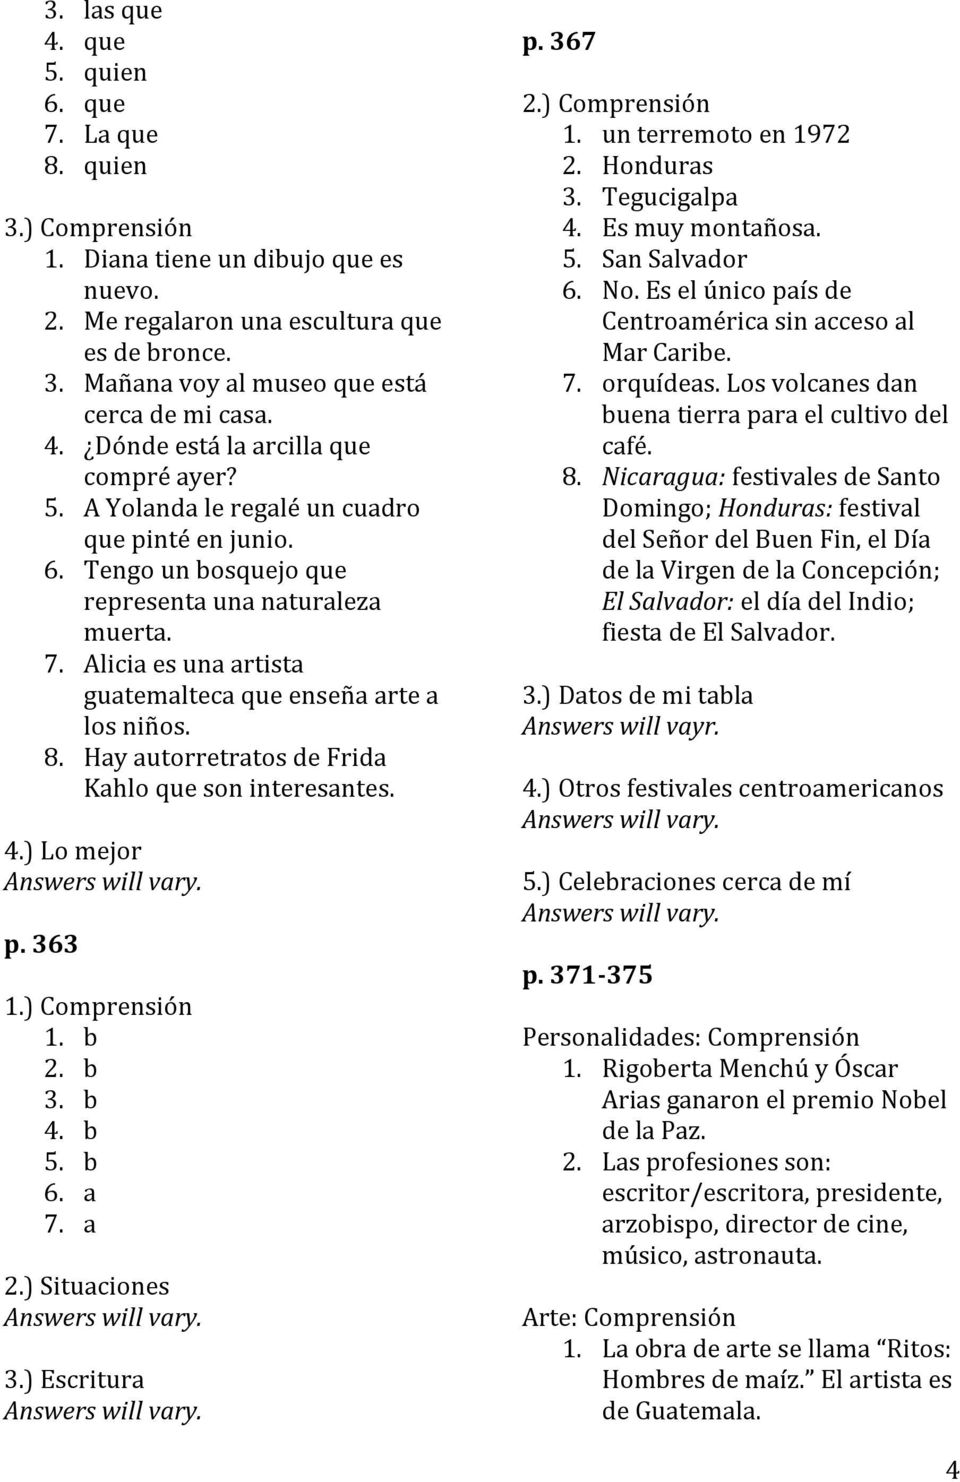 Hay autorretratos de Frida Kahlo que son interesantes. 4.) Lo mejor p. 363 1.) 4. b 5. b 7. a 2.) Situaciones 3.) Escritura p. 367 2.) 1. un terremoto en 1972 2. Honduras 3. Tegucigalpa 4.